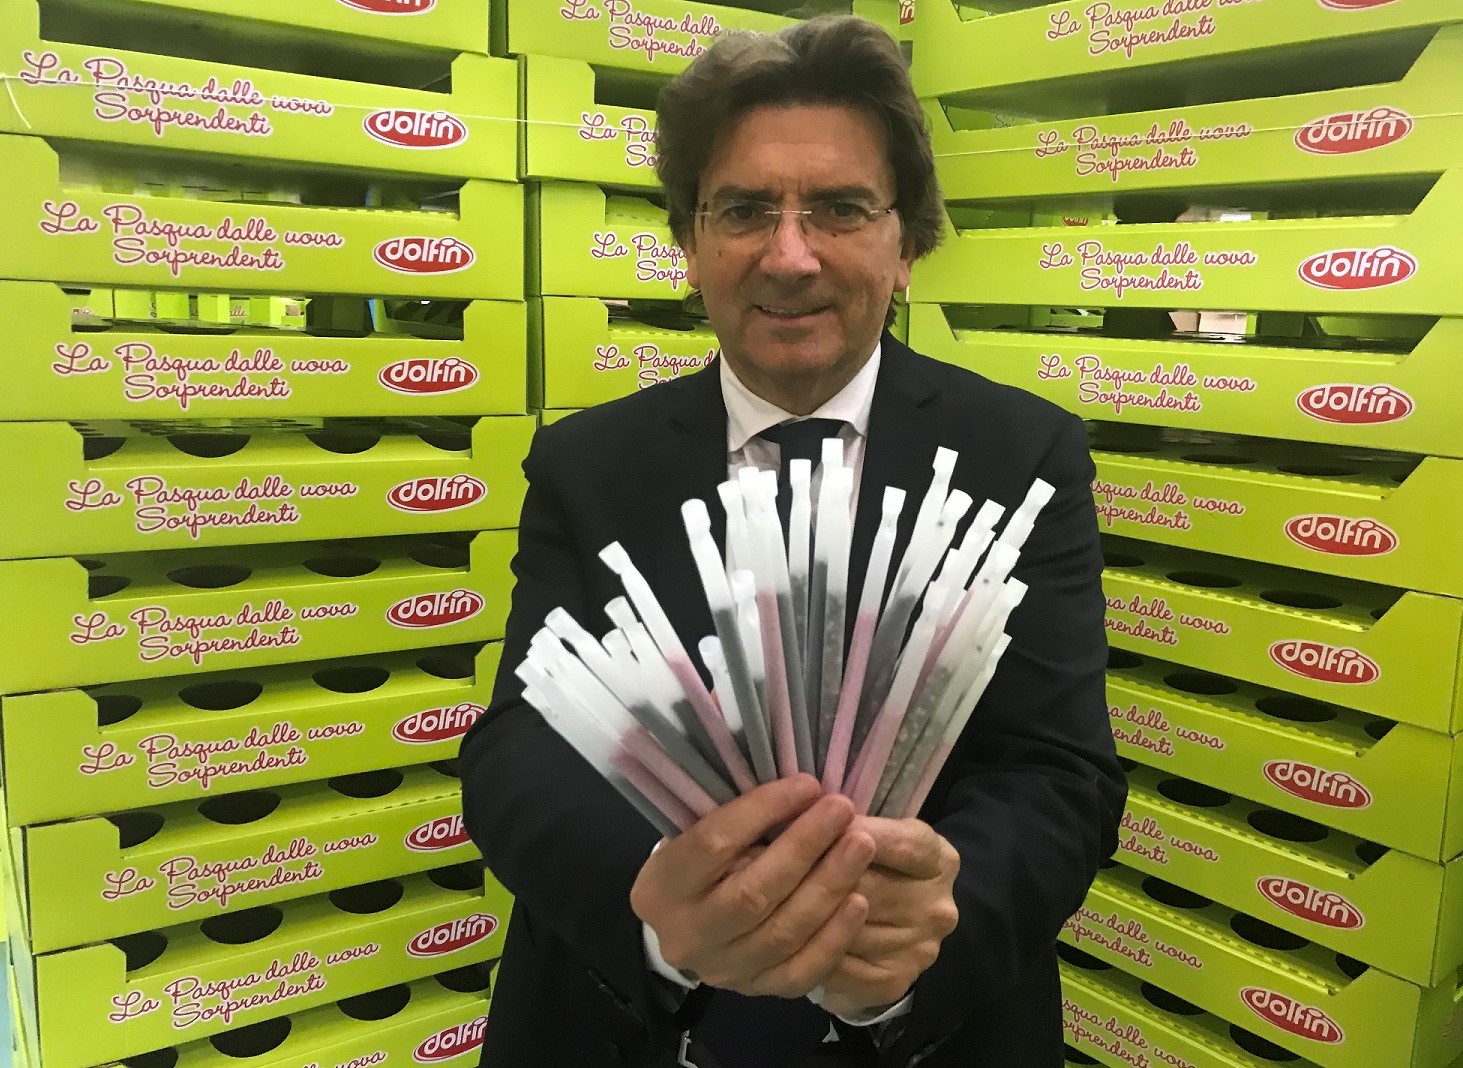 cannuccia plastic free Santi Finocchiaro, Presidente Dolfin Spa, mostra le-ecocannucce in mais delle Polaretti Magic Milk